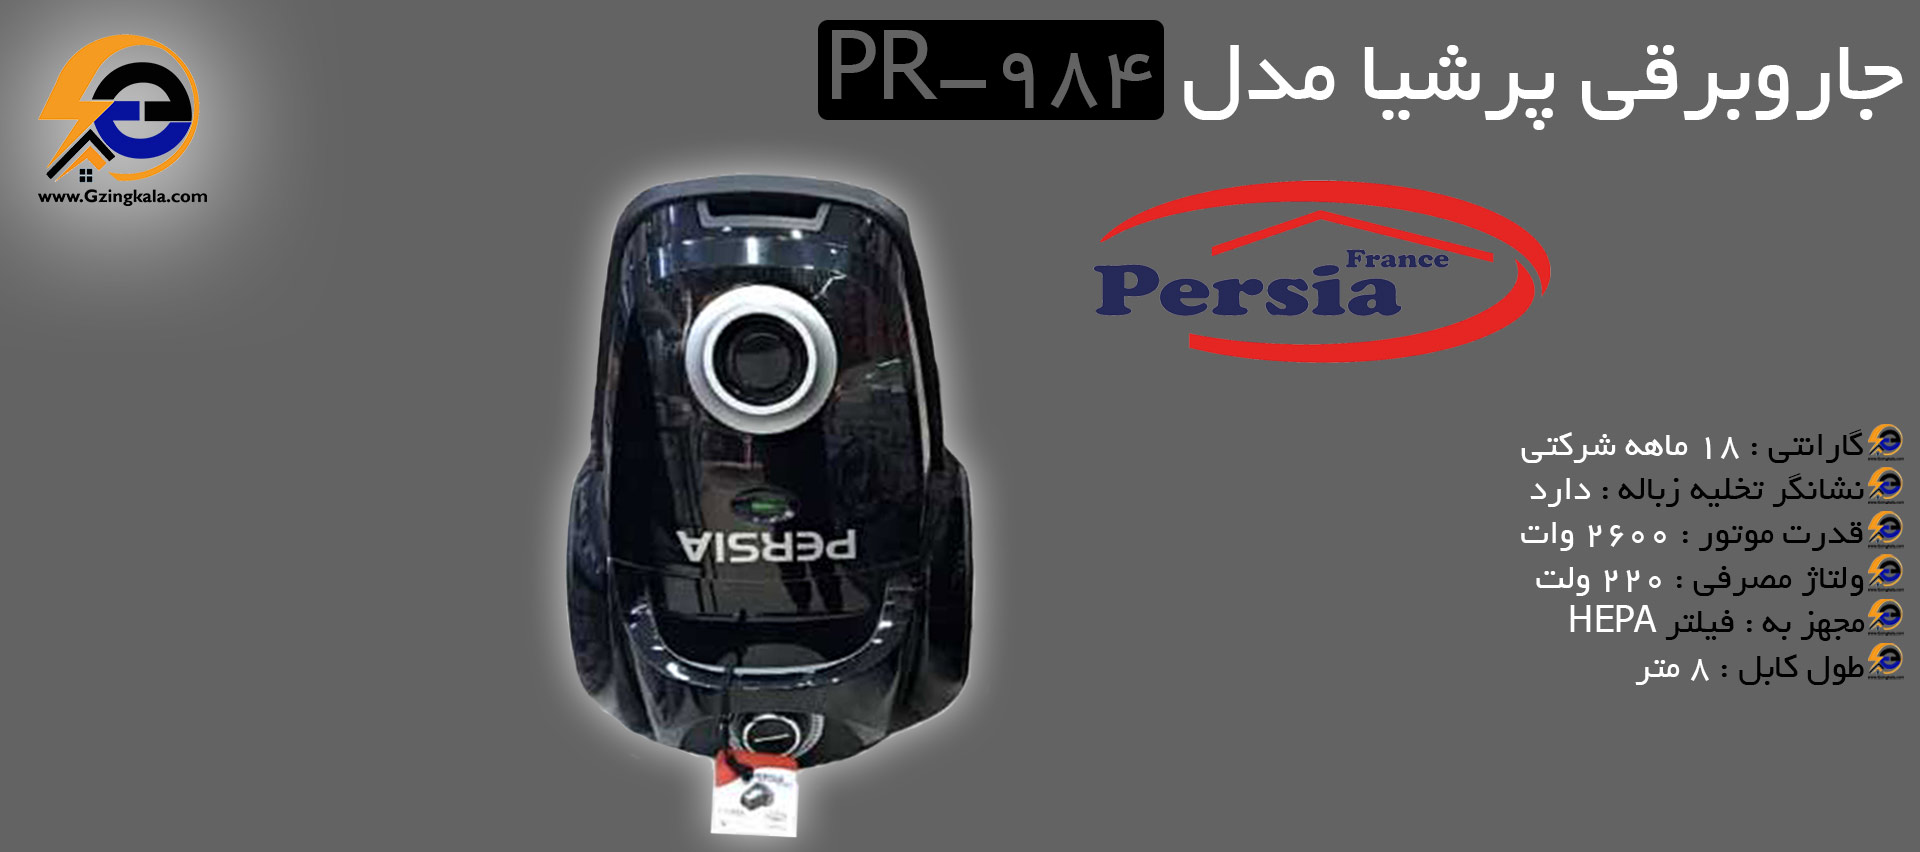 جاروبرقی پرشیا مدل PR-984